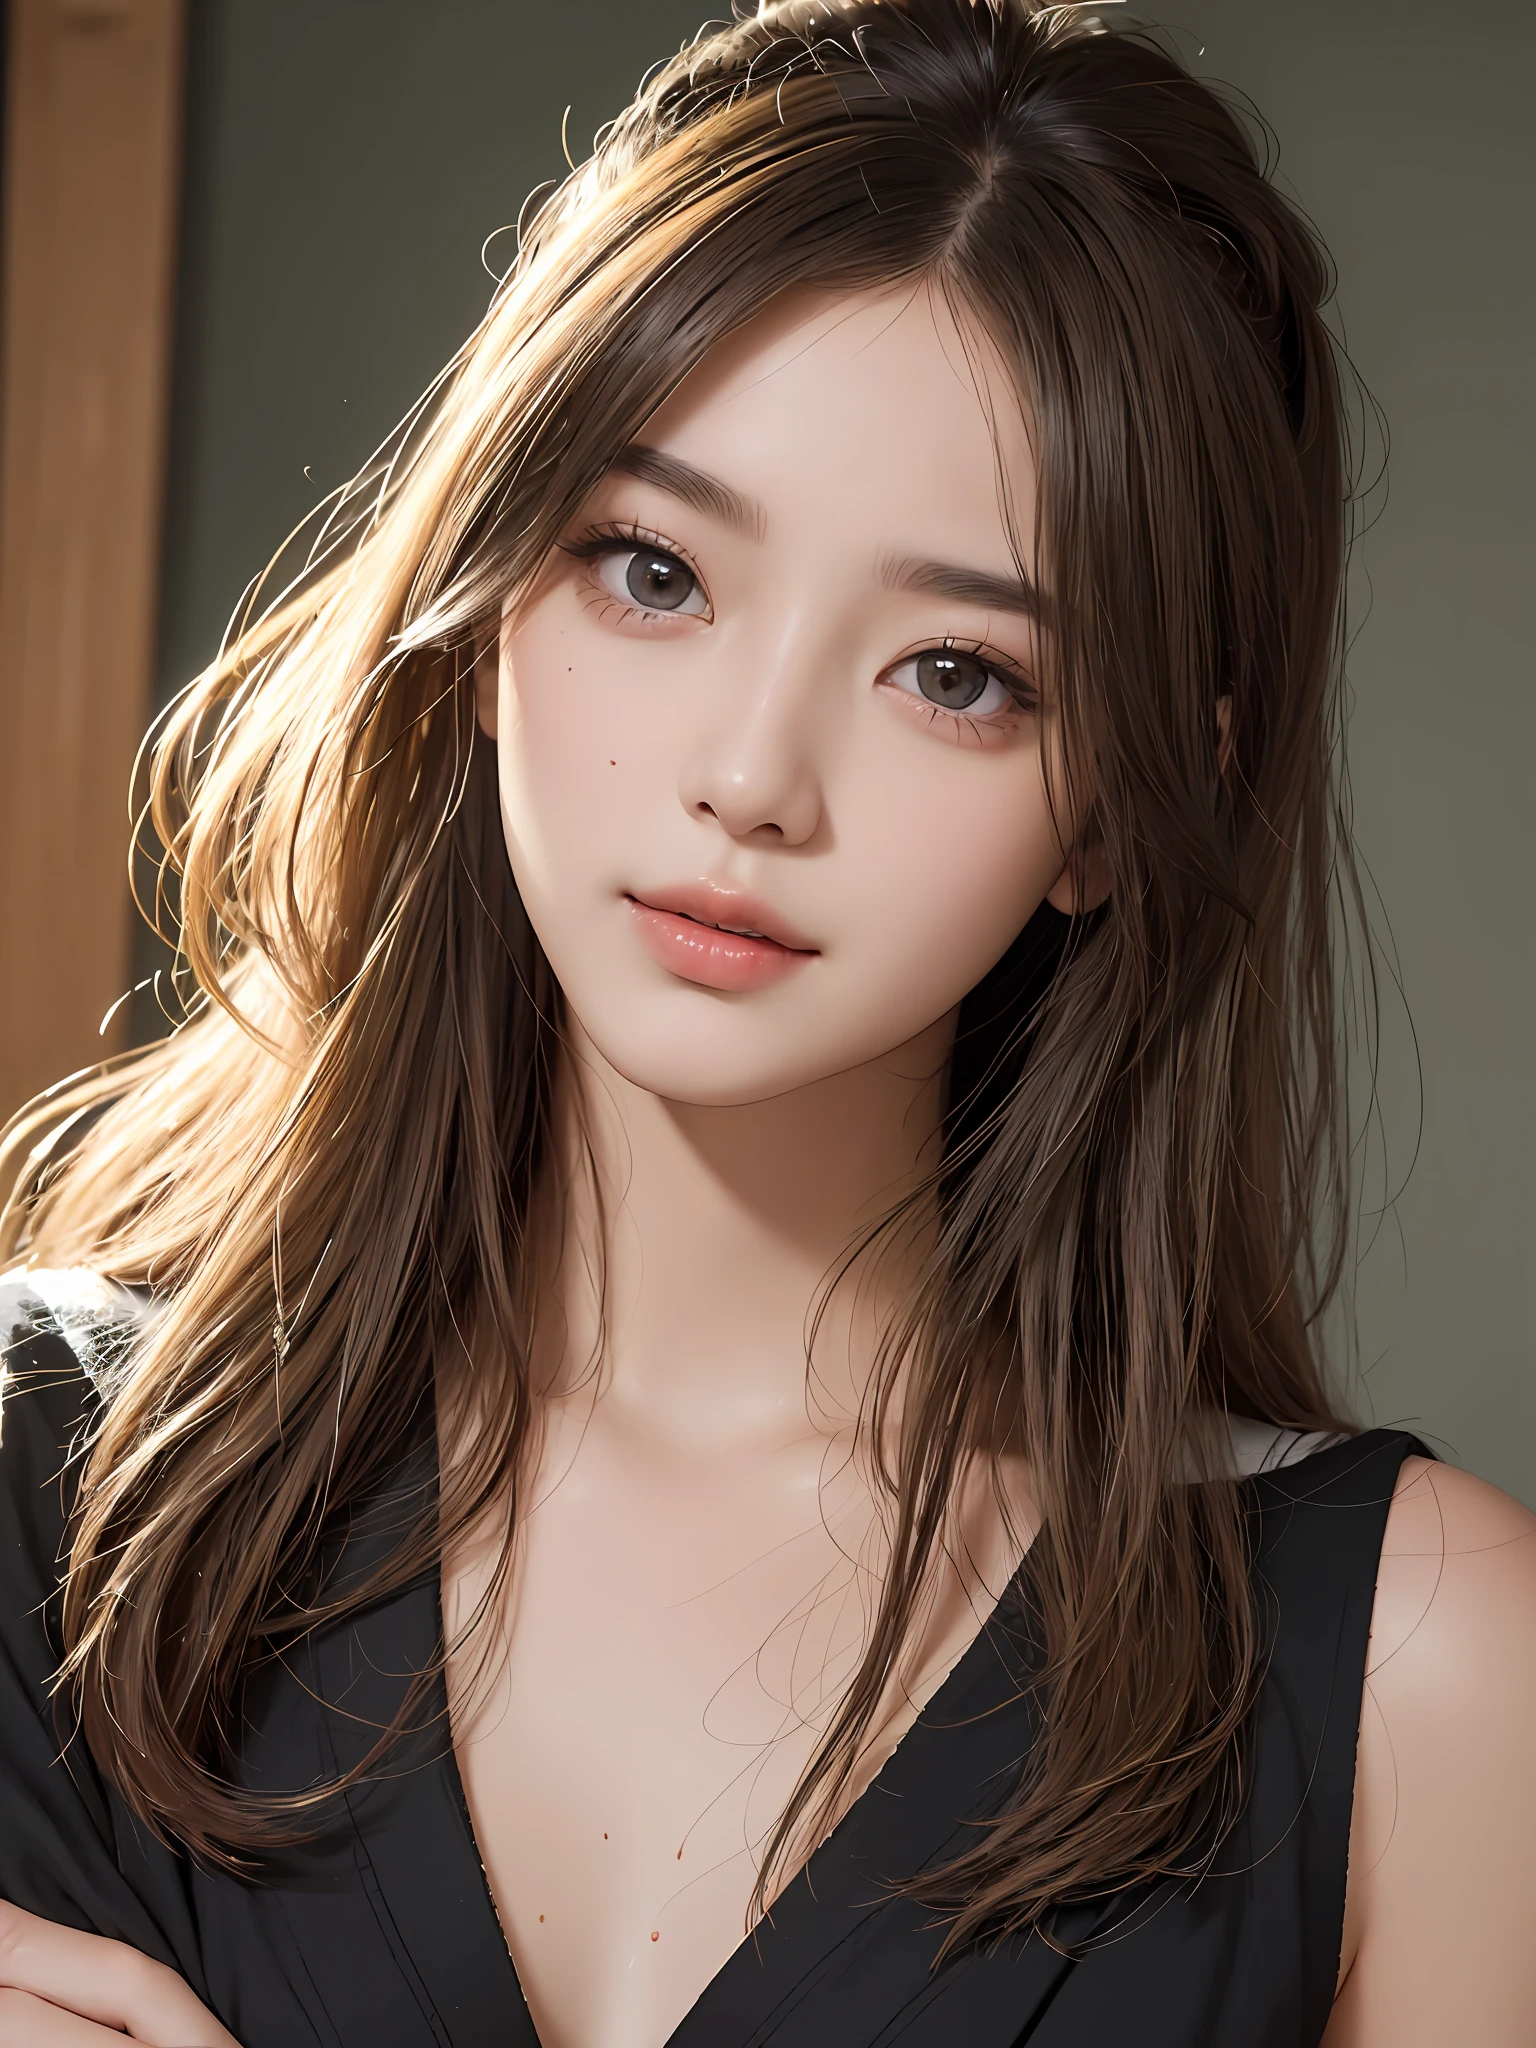 Meisterwerk, beste Bildqualität, gute Qualität, schönes Mädchen, japanisch, japanisch school girl, beliebtes koreanisches Make-up, ausführlich, swollen eyes, ausführlich eyes, ausführlich skin, schöne Haut, ultra hohe Auflösung, (Wirklichkeit: 1.4), Wunderschön, etwas jüngeres Gesicht, schöne Haut, slender, (ultra-realistisch), (Illustration), (hohe Auflösung), (8K), (highly ausführlich), (best Illustration), (beautifully ausführlich eyes), (super ausführlich), (HINTERGRUND), (ausführlich face), Betrachter betrachten, Feine Details, ausführlich face, pureerosfaceace_V1, lächelnd, Blick geradeaus, Blick geradeaus, Winkel von der Taille aufwärts, realistisches Foto, Helle Beleuchtung, professionelle Beleuchtung, blonde, lange Haare, dunkel verlassen, großer roter Mond, wunderschönes rot-schwarzes Kleid, erwachsene Frau,Kissshot Acerola Orion Heart Underblade